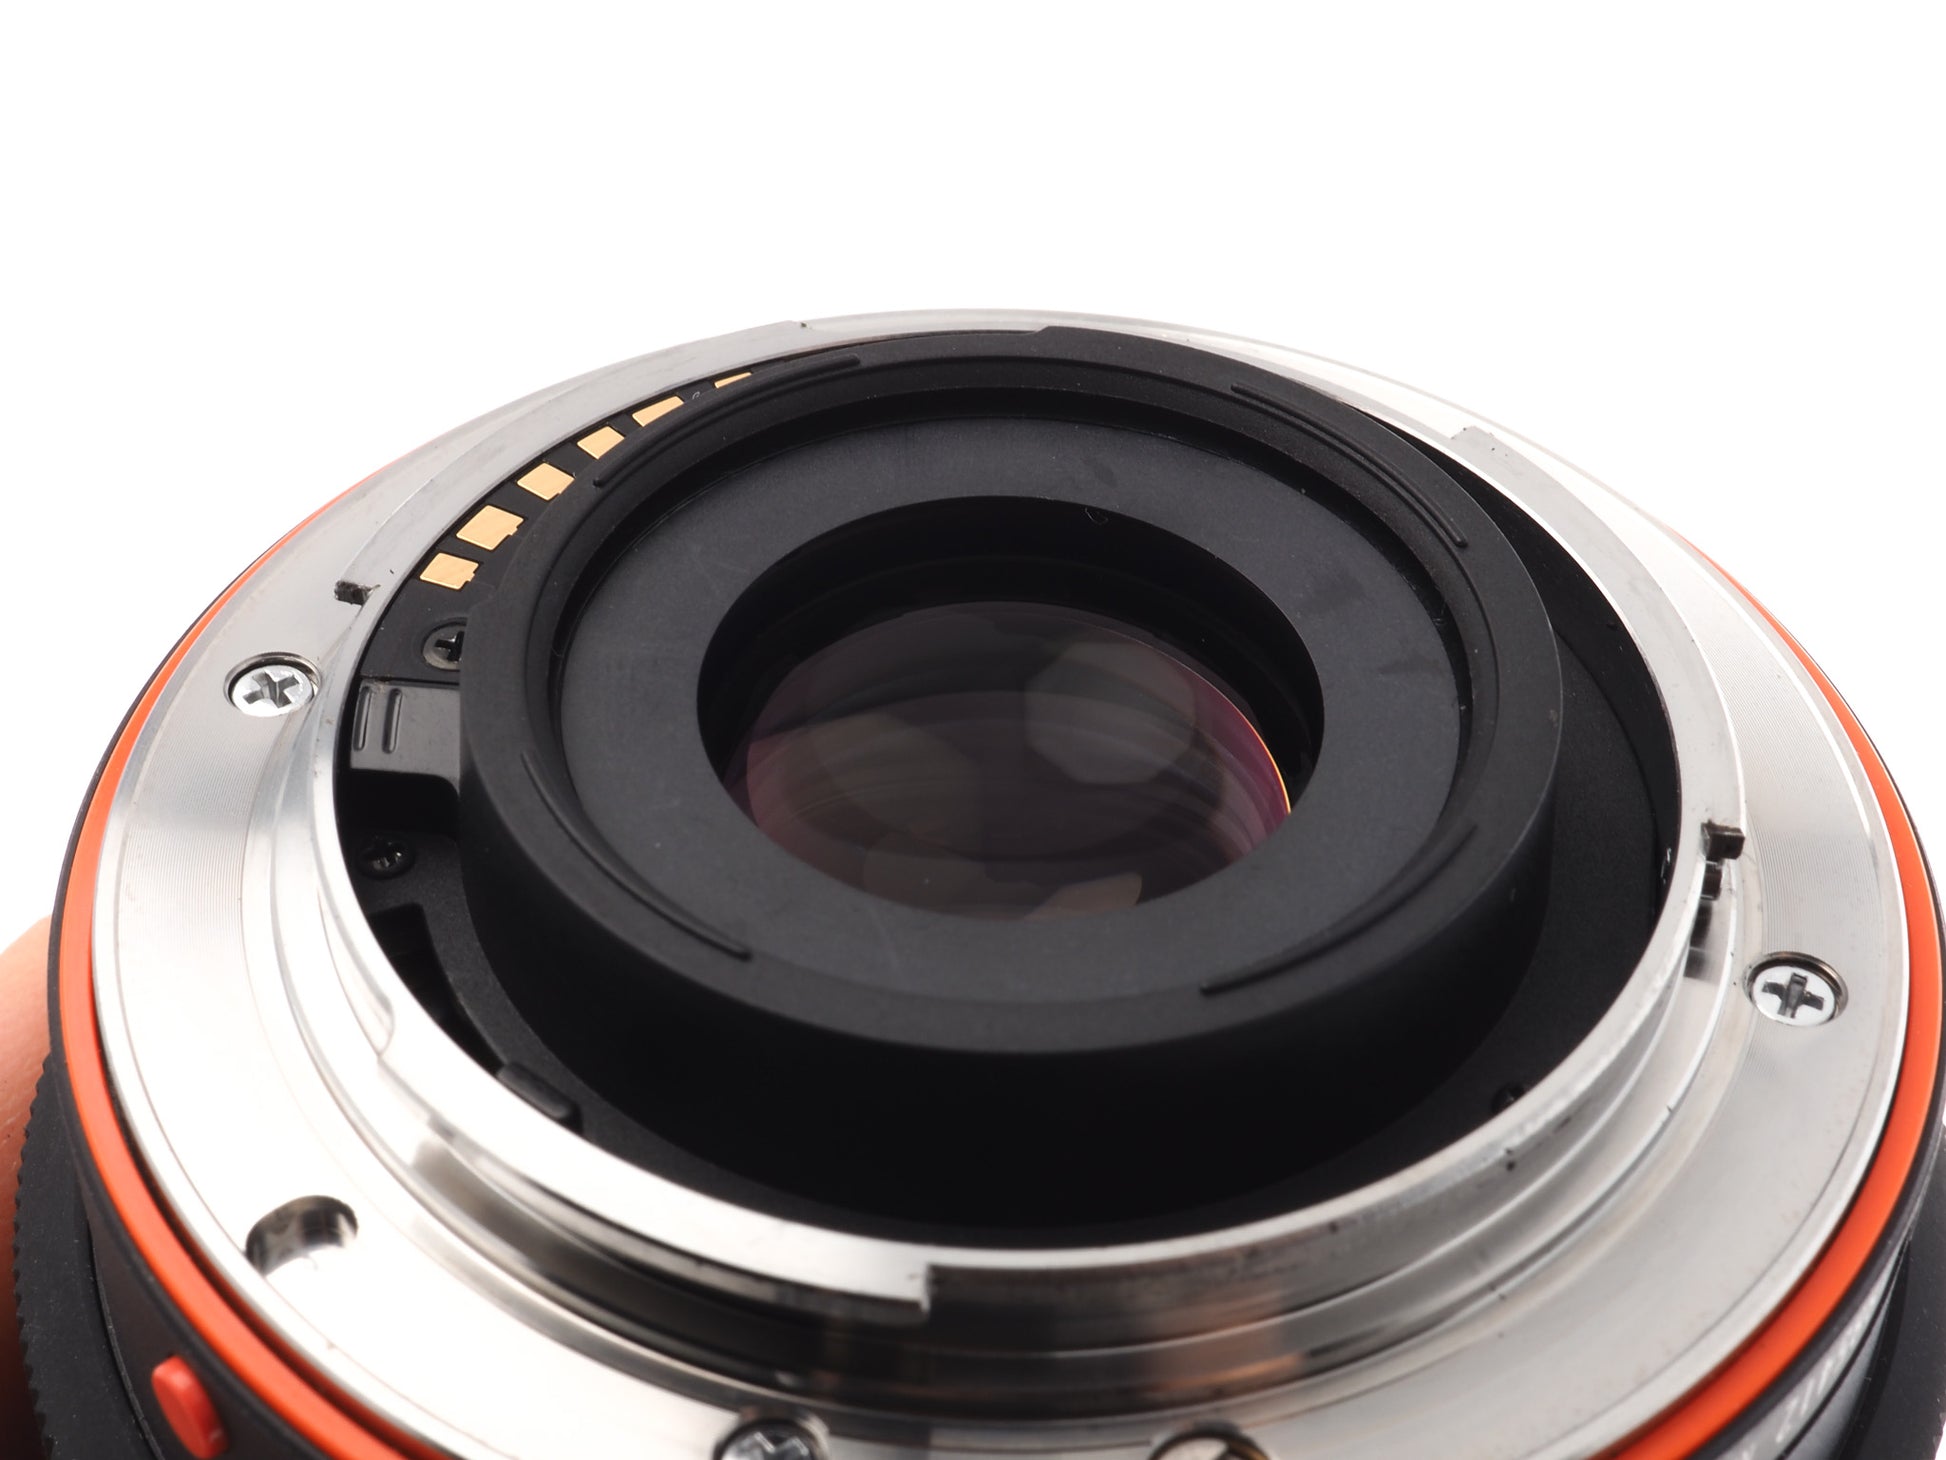 Sony a58 - Camera – Kamerastore